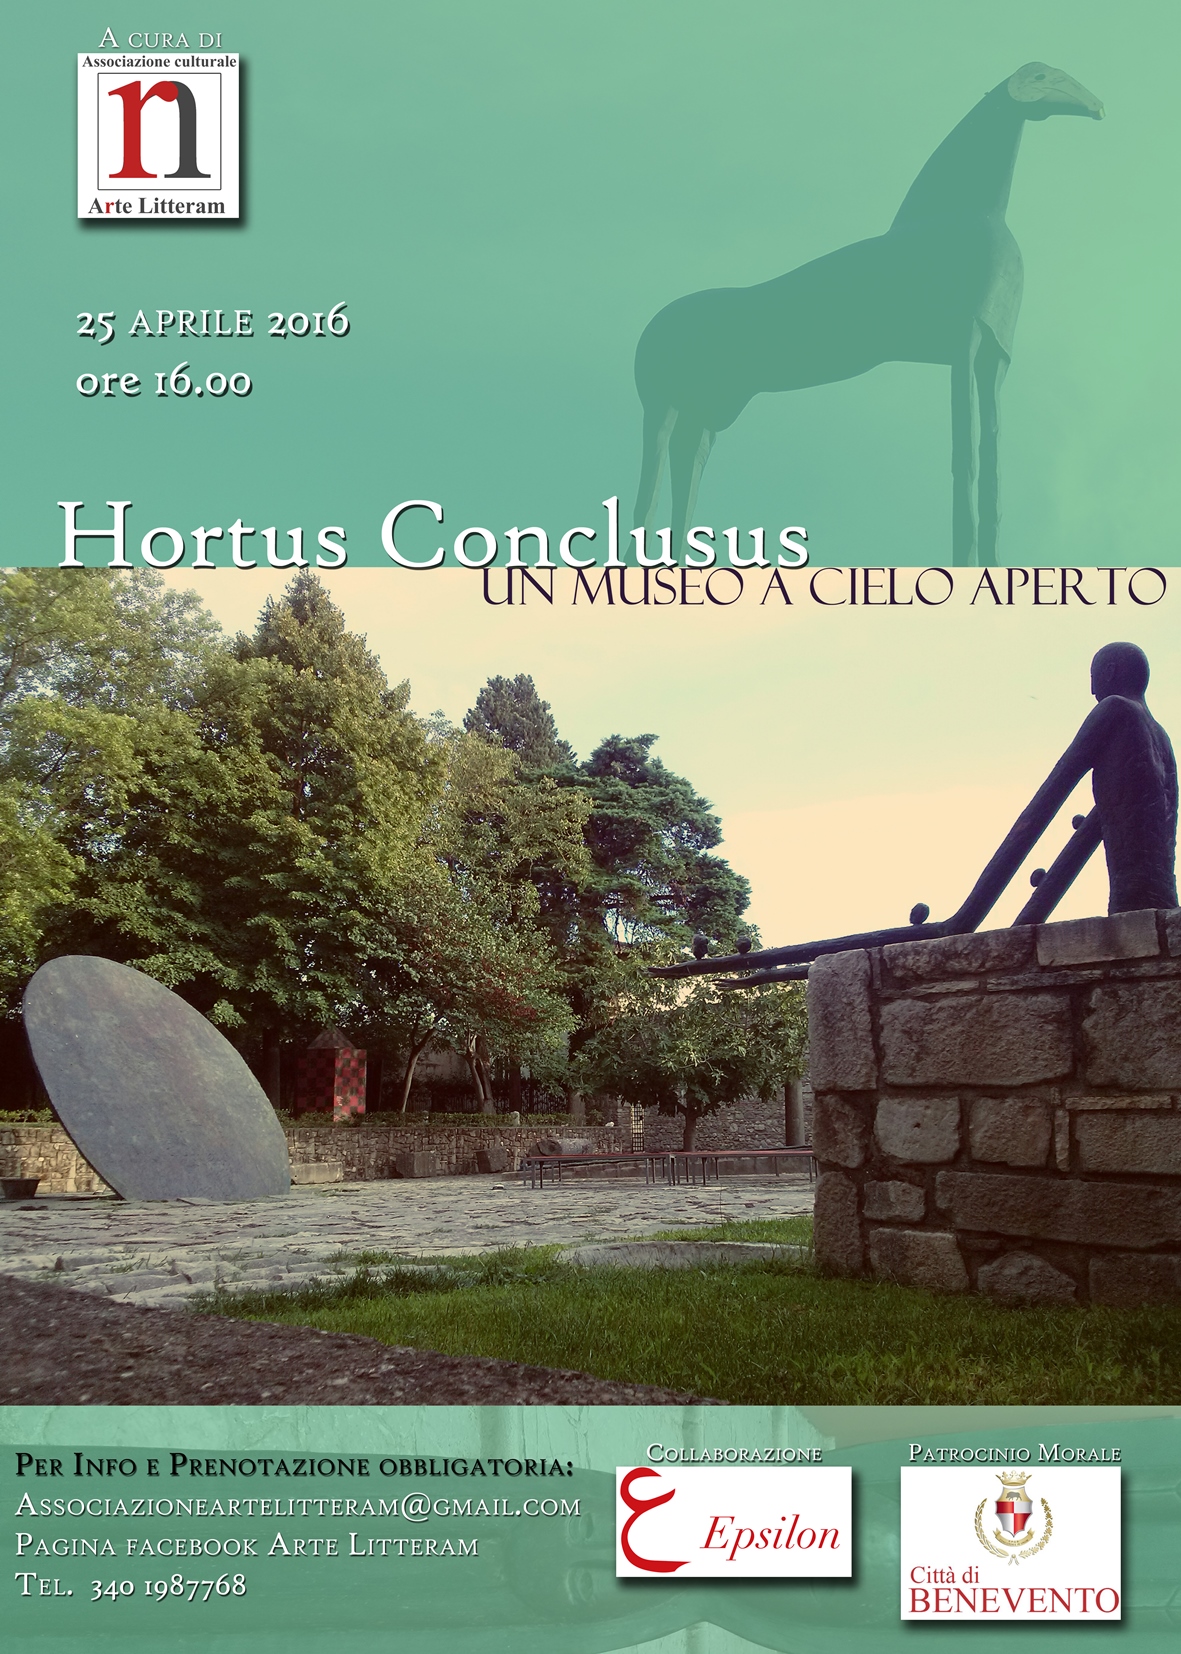 Arte Litteram all’Hortus Conclusus